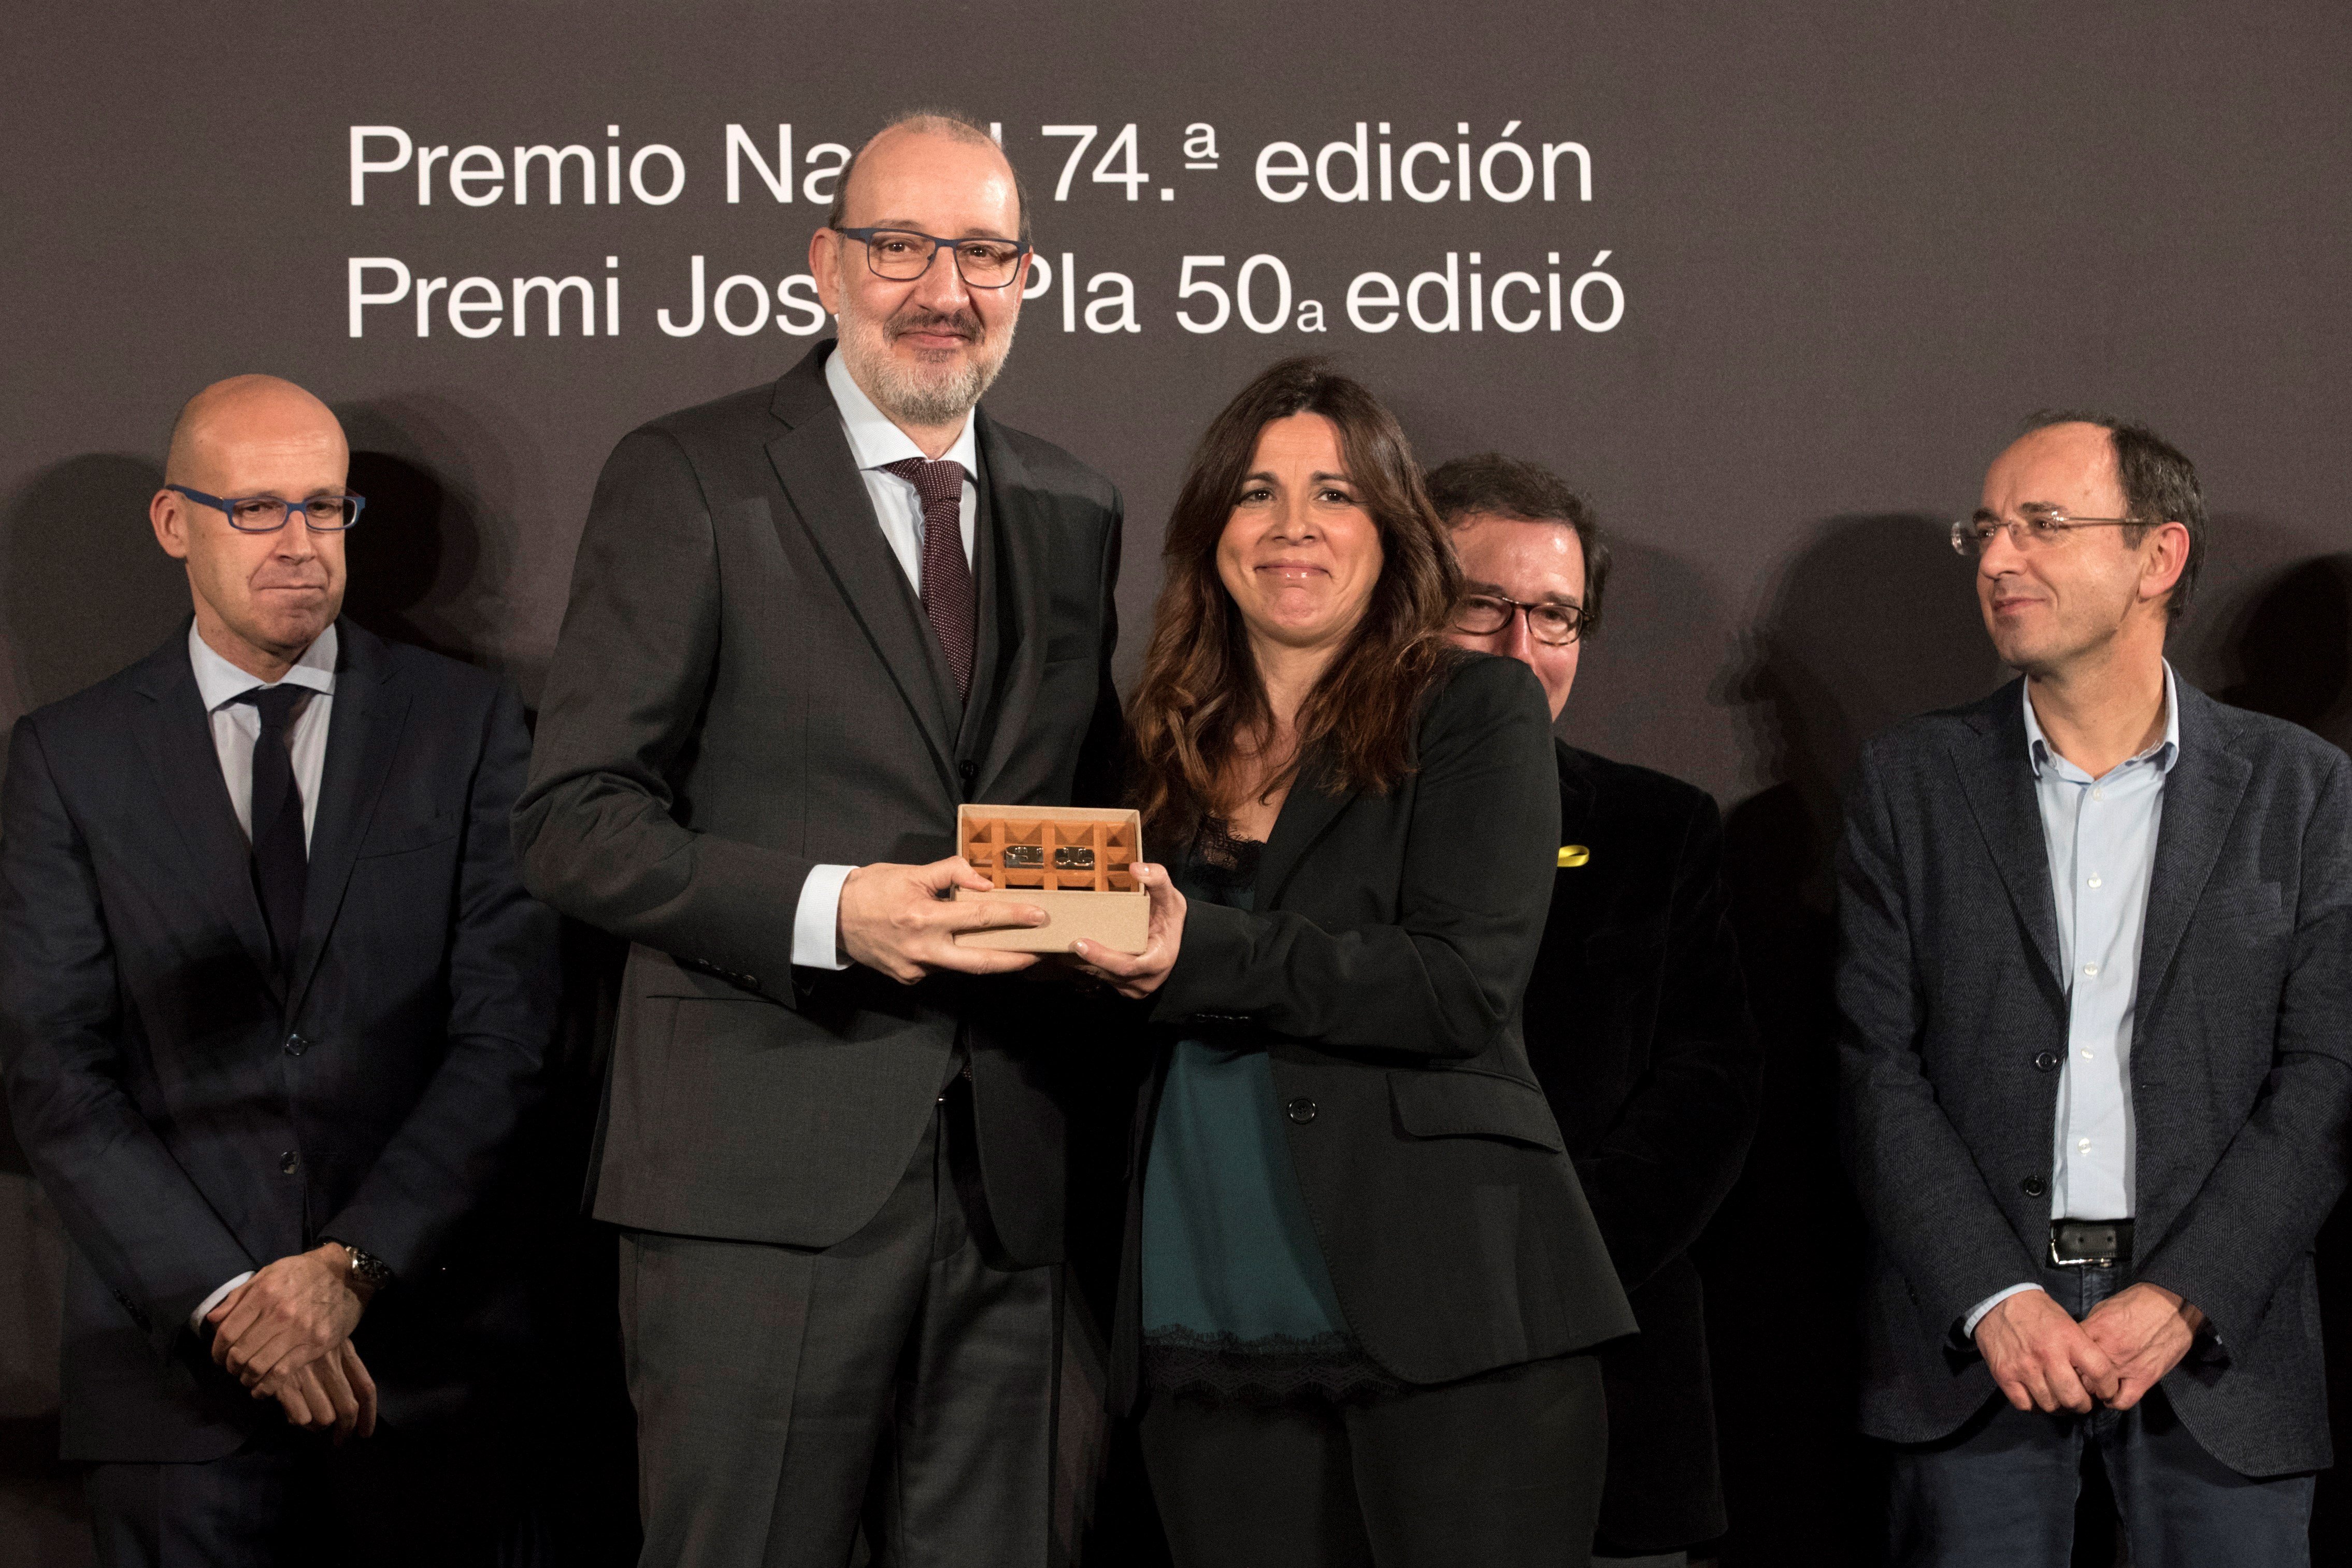 El premi Josep Pla torna al periodisme amb les memòries radiofòniques d'Antoni Bassas